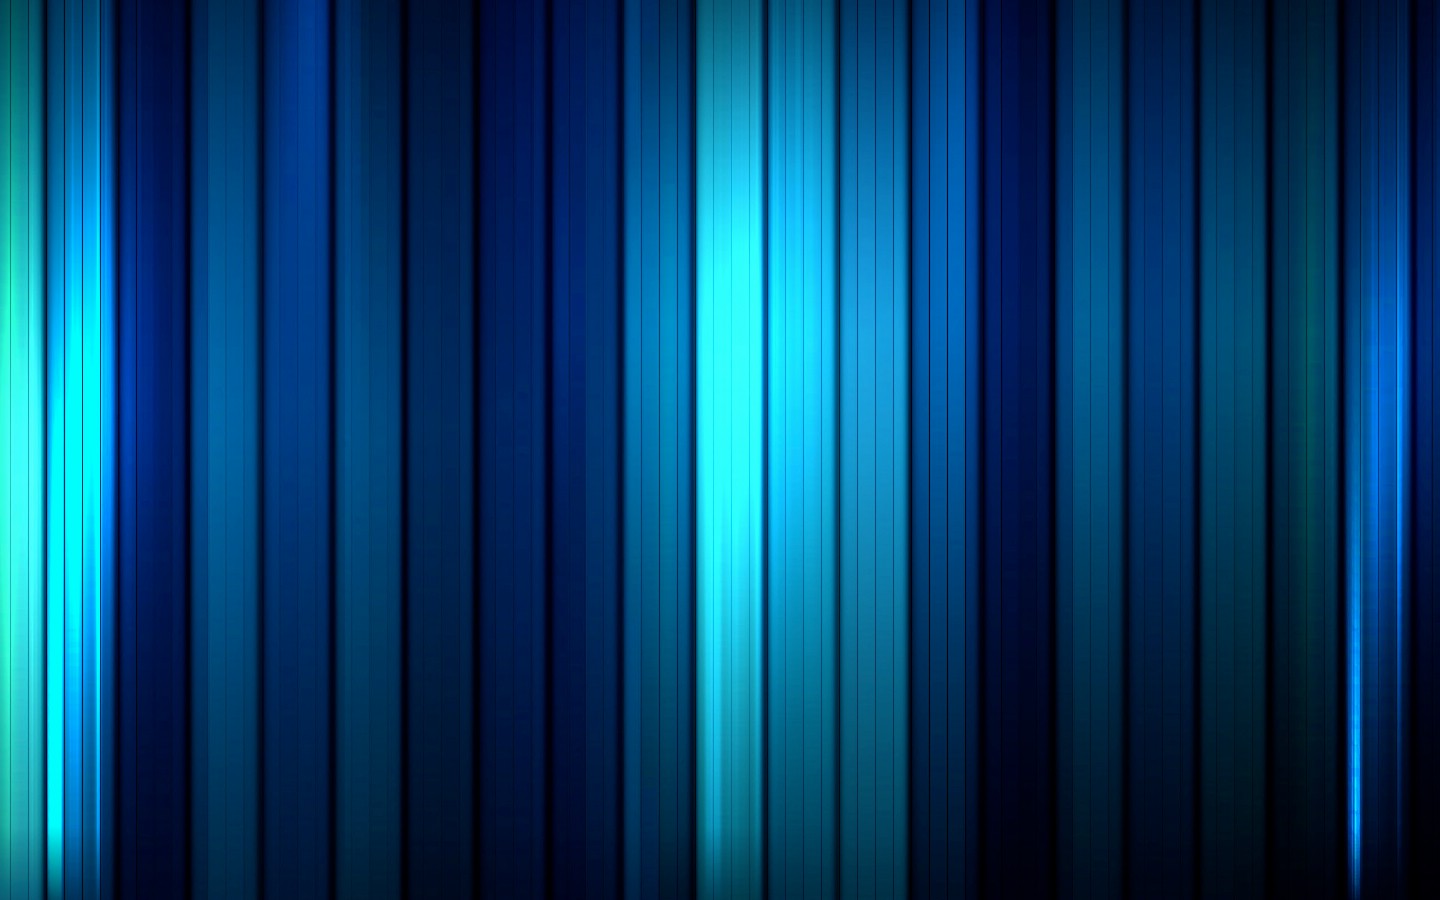 壁纸1440x900蓝色静谧主题系列壁纸壁纸 蓝色静谧主题系列壁纸壁纸 蓝色静谧主题系列壁纸图片 蓝色静谧主题系列壁纸素材 创意壁纸 创意图库 创意图片素材桌面壁纸